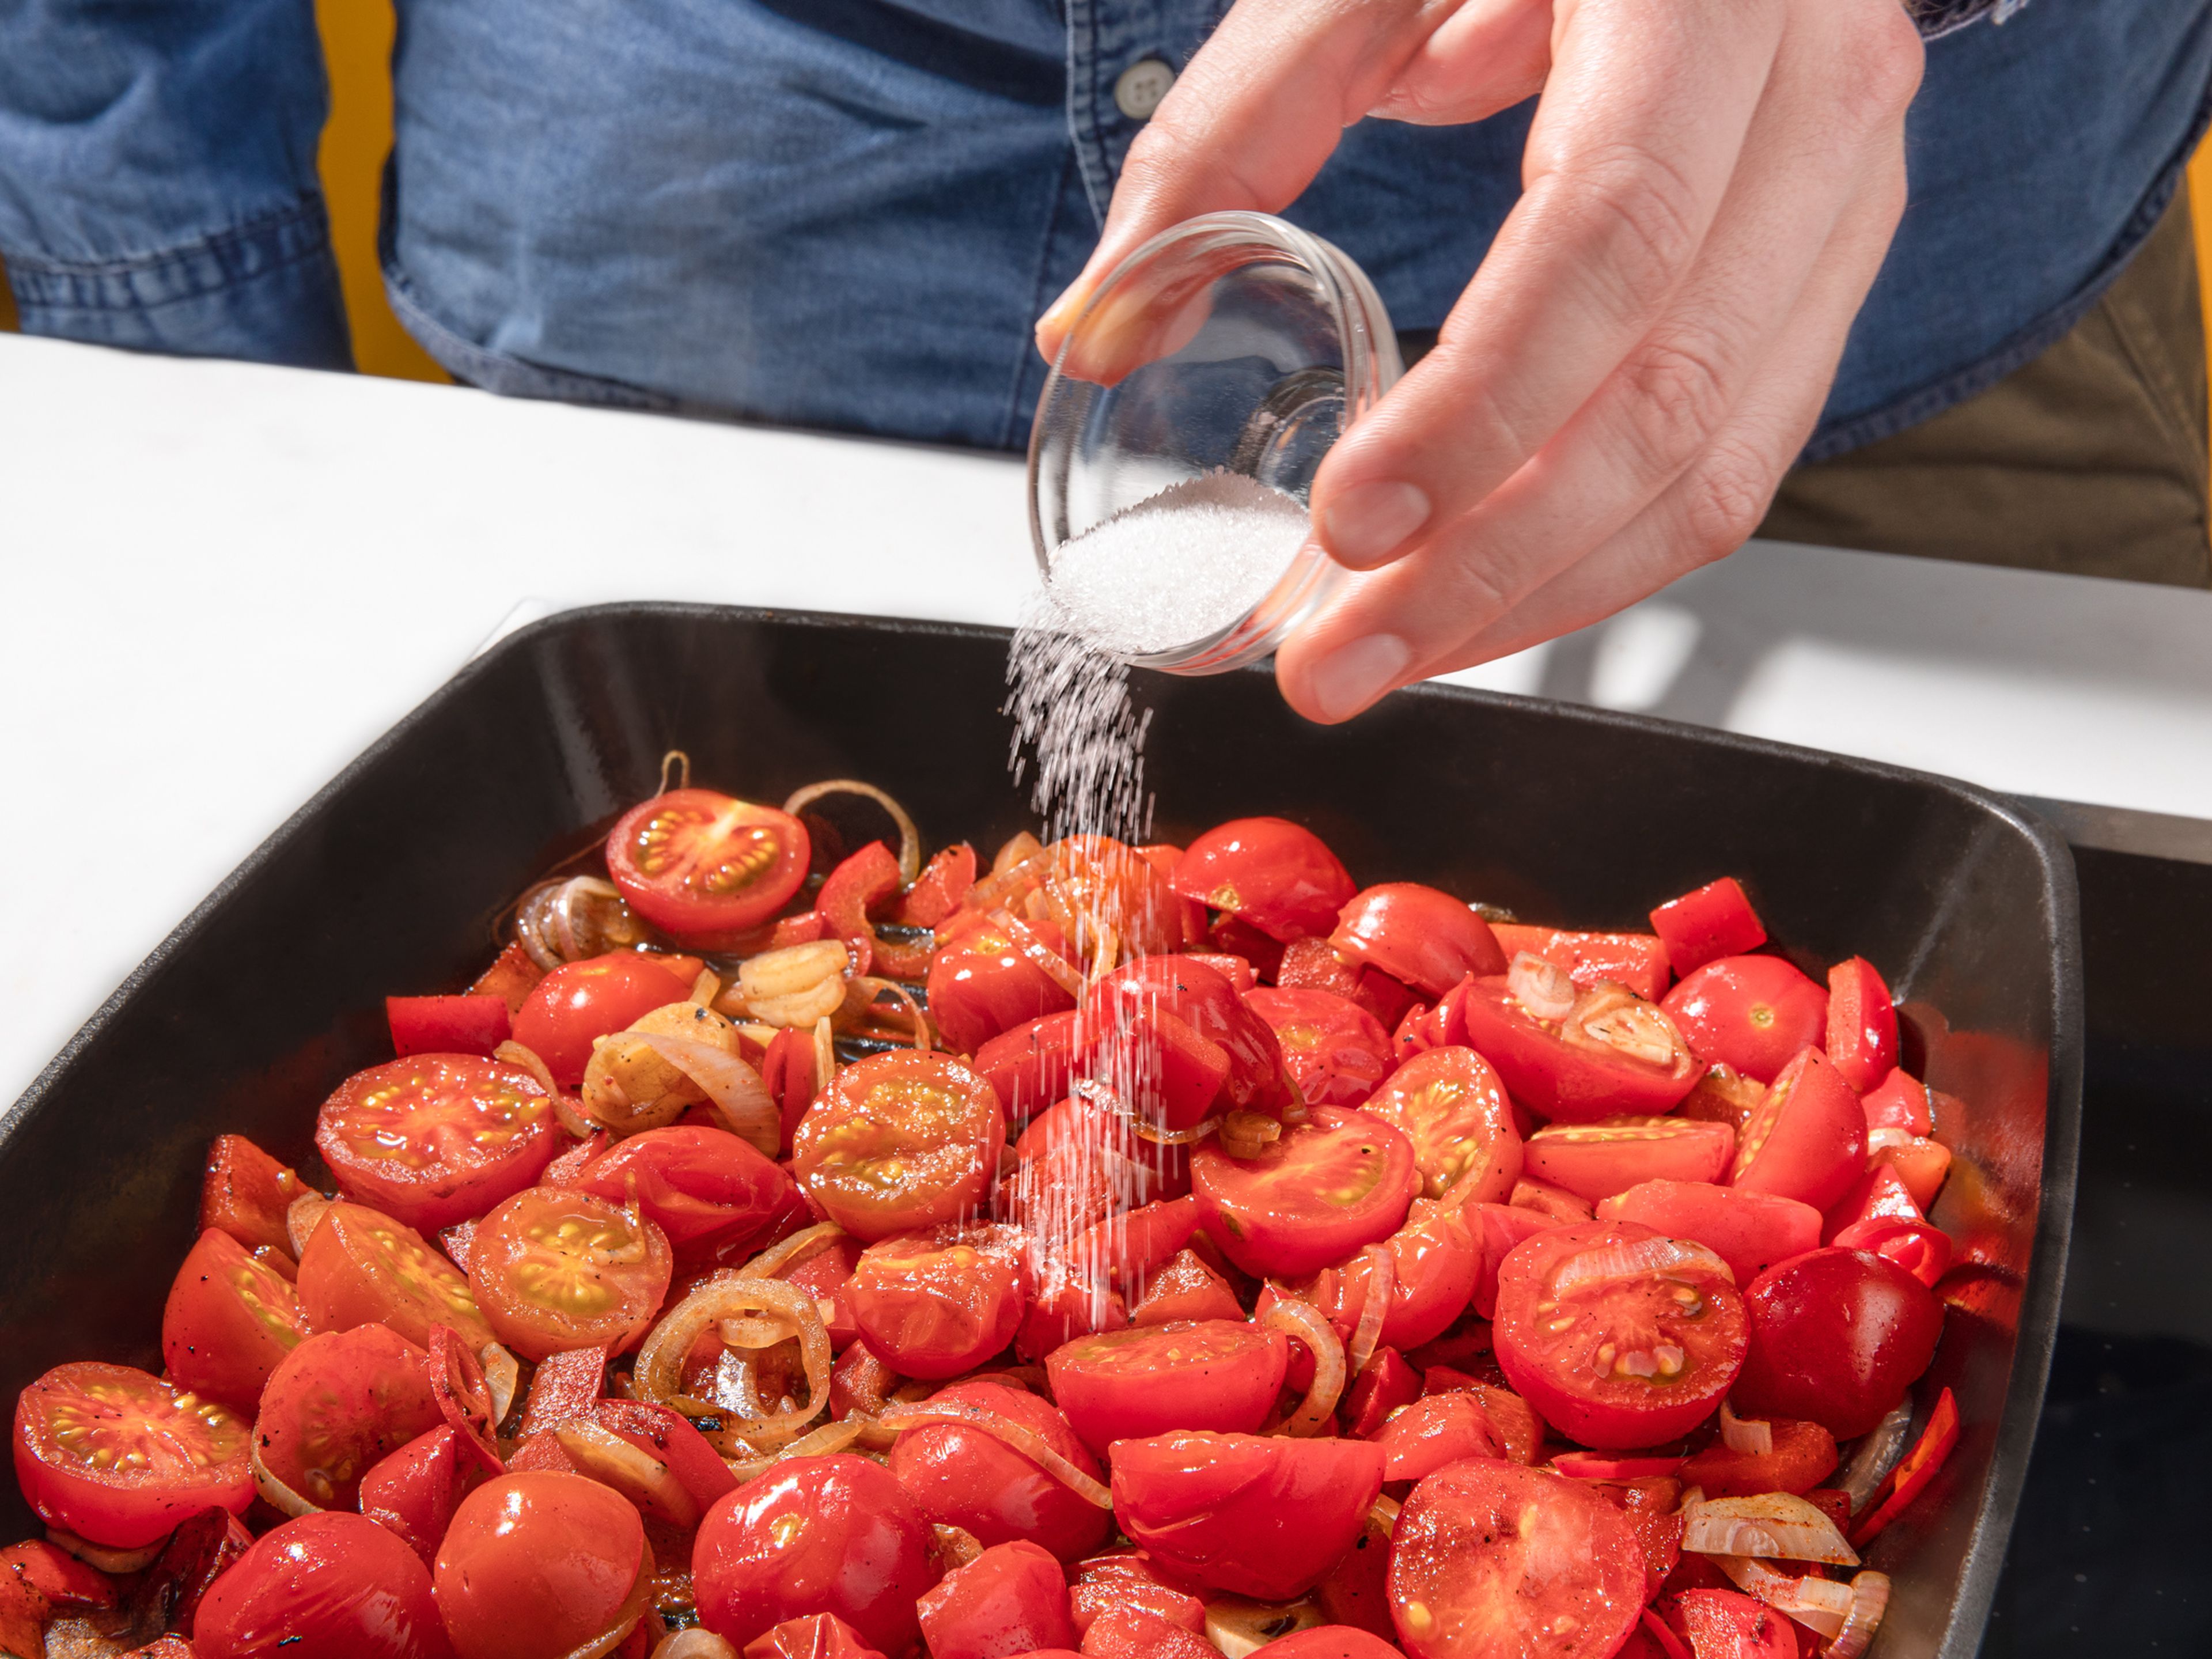 In der gleichen Pfanne dann die Paprika grillen bis sie etwas Farbe bekommt. Knoblauch, Tomaten, Chili und Schalotten beifügen. Mit 100ml Wasser ablöschen und unter Rühren köcheln lassen. Nach 5-7 Minuten geräuchertes Paprikapulver, Worchestersauce und Zucker hinzufügen. Weiterhin etwas köcheln lassen.